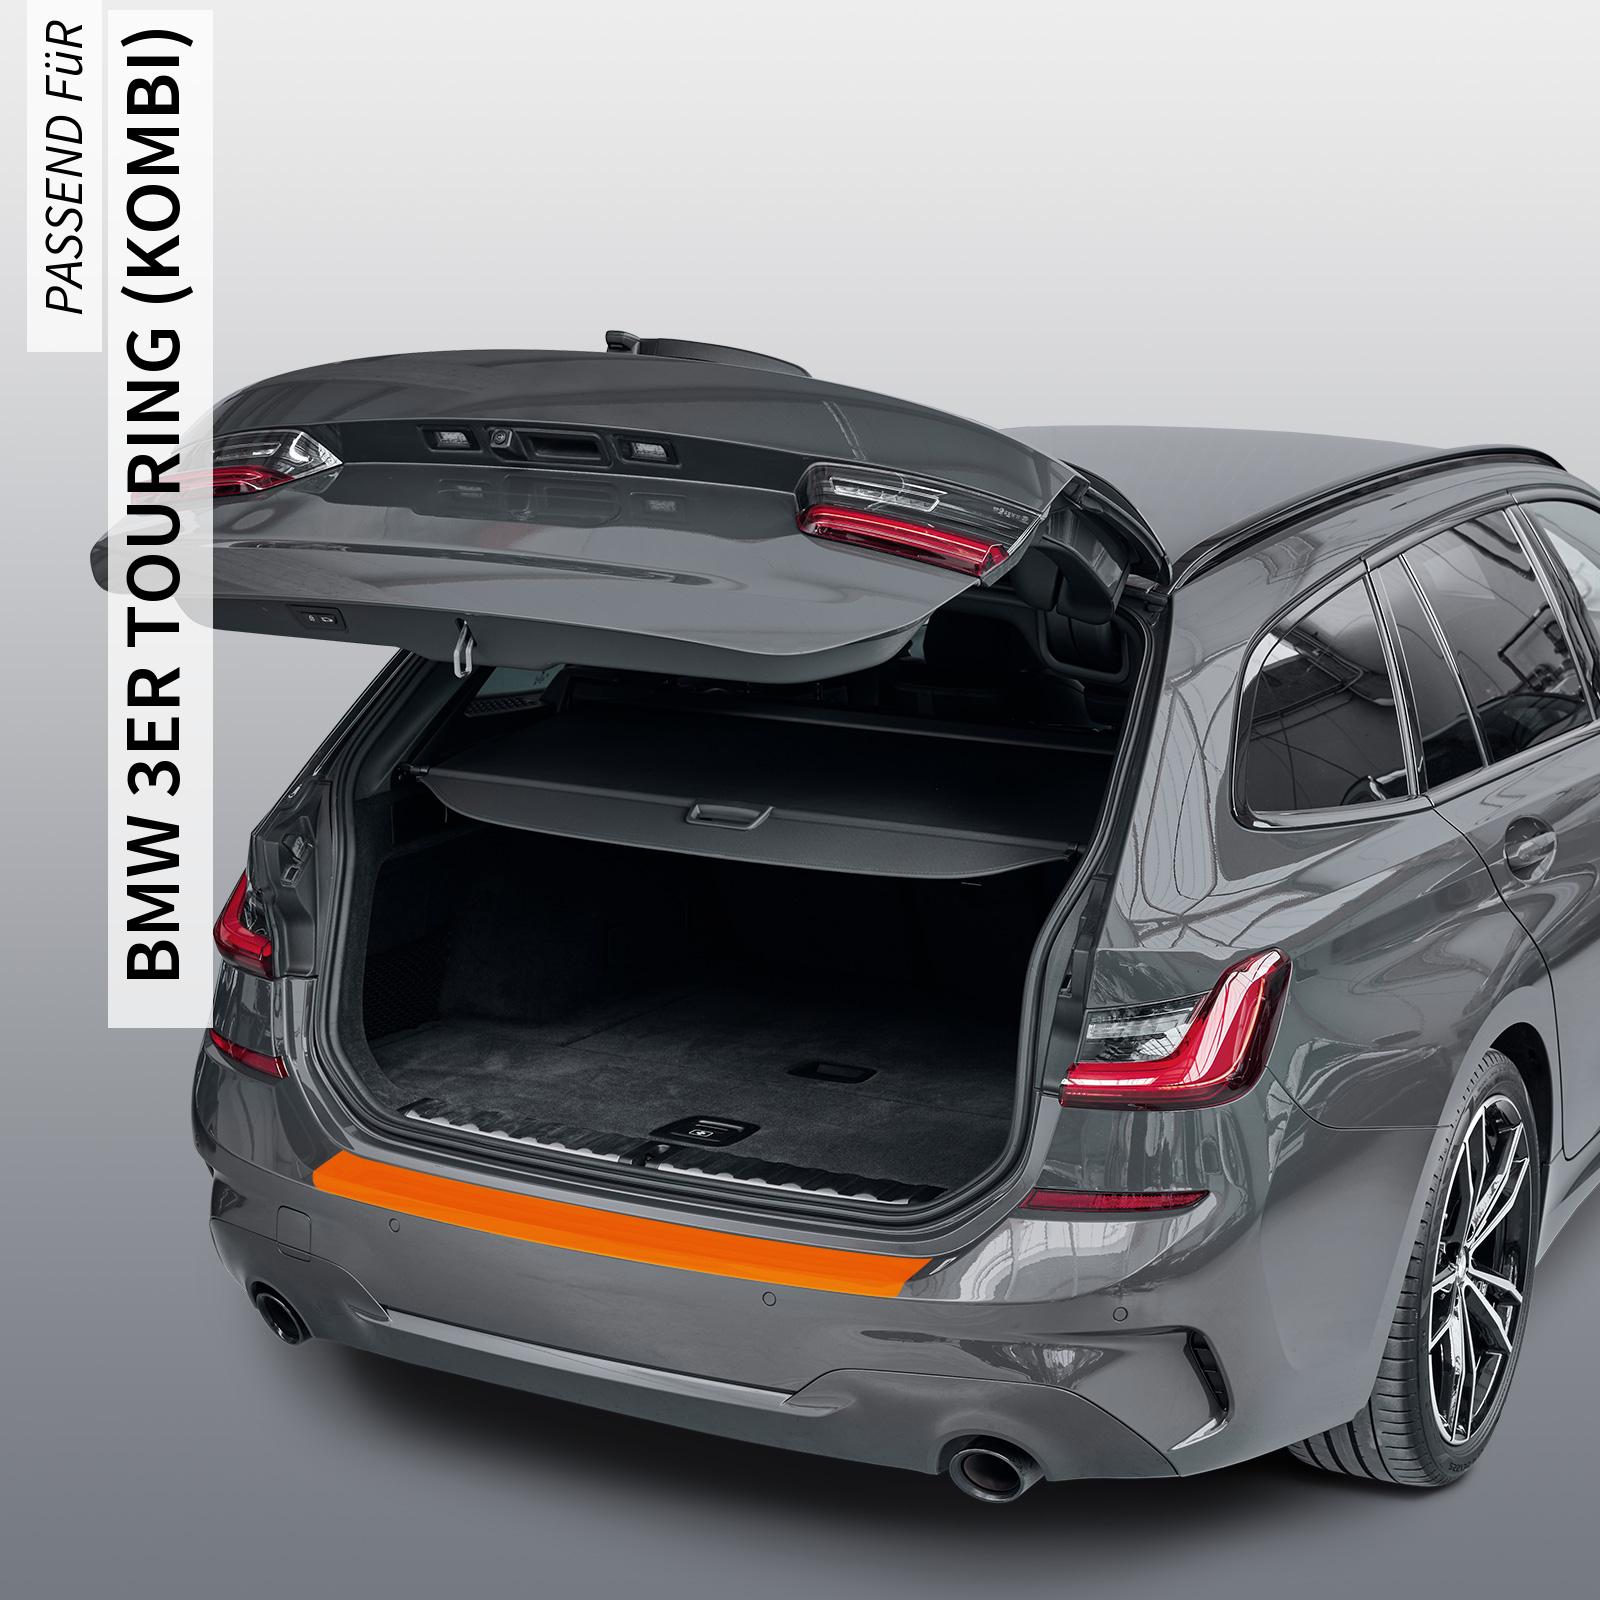 Ladekantenschutzfolie - Transparent Glatt MATT 110 µm stark  für BMW 3er Touring (Kombi) Typ F31, Facelift, BJ 05/2015-08/2019